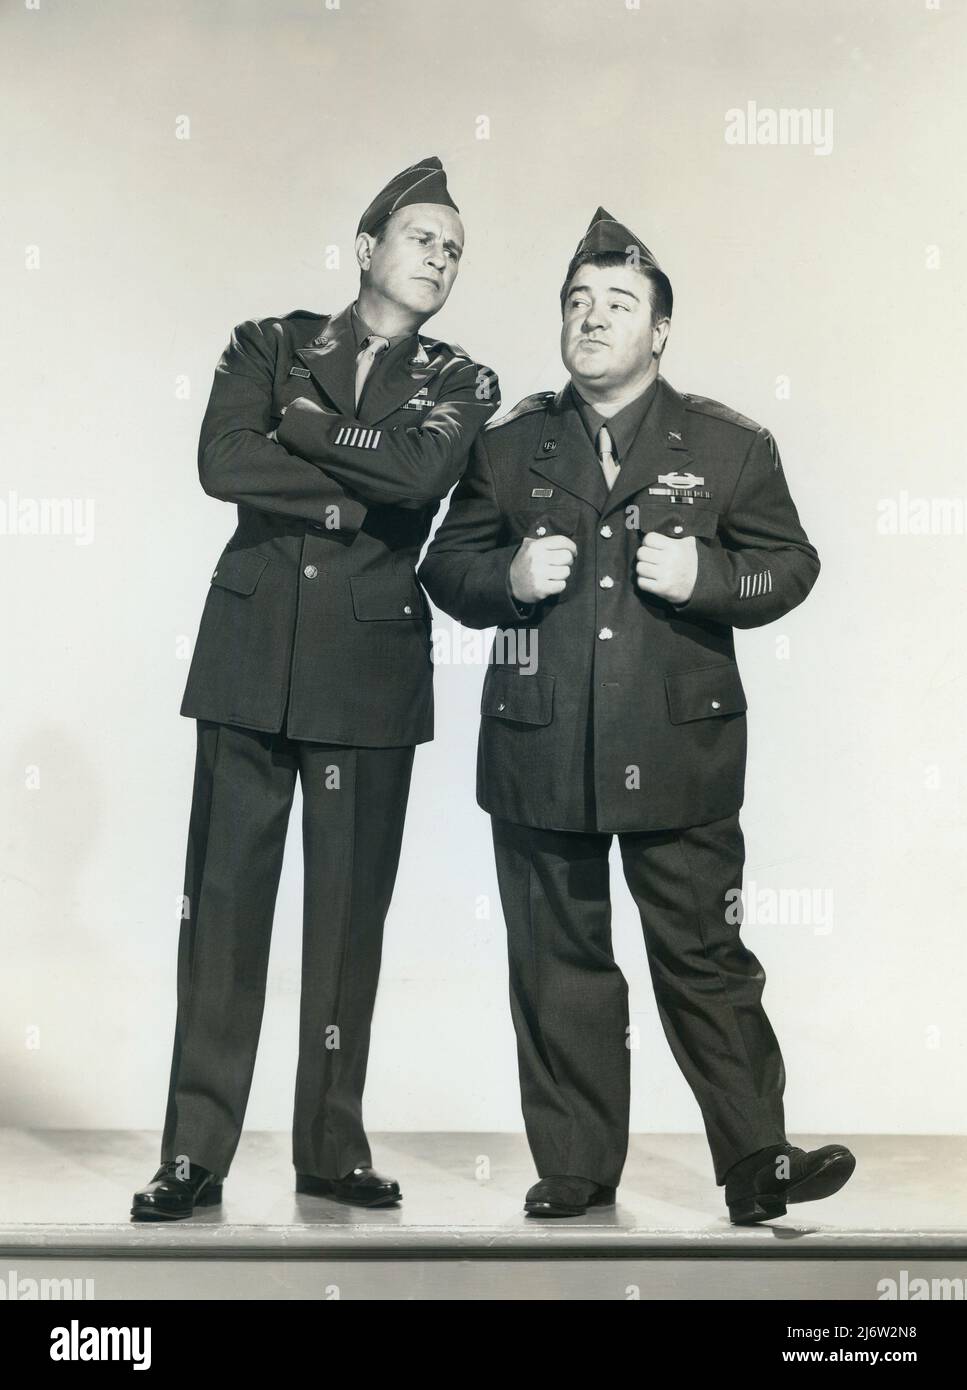 Bud Abbott (1895-1974), actor, productor y comediante, y Lou Costello (1906-1959), humorista, formaron un popular dúo de comedia estadounidense en la década de 1940. Stock Photo